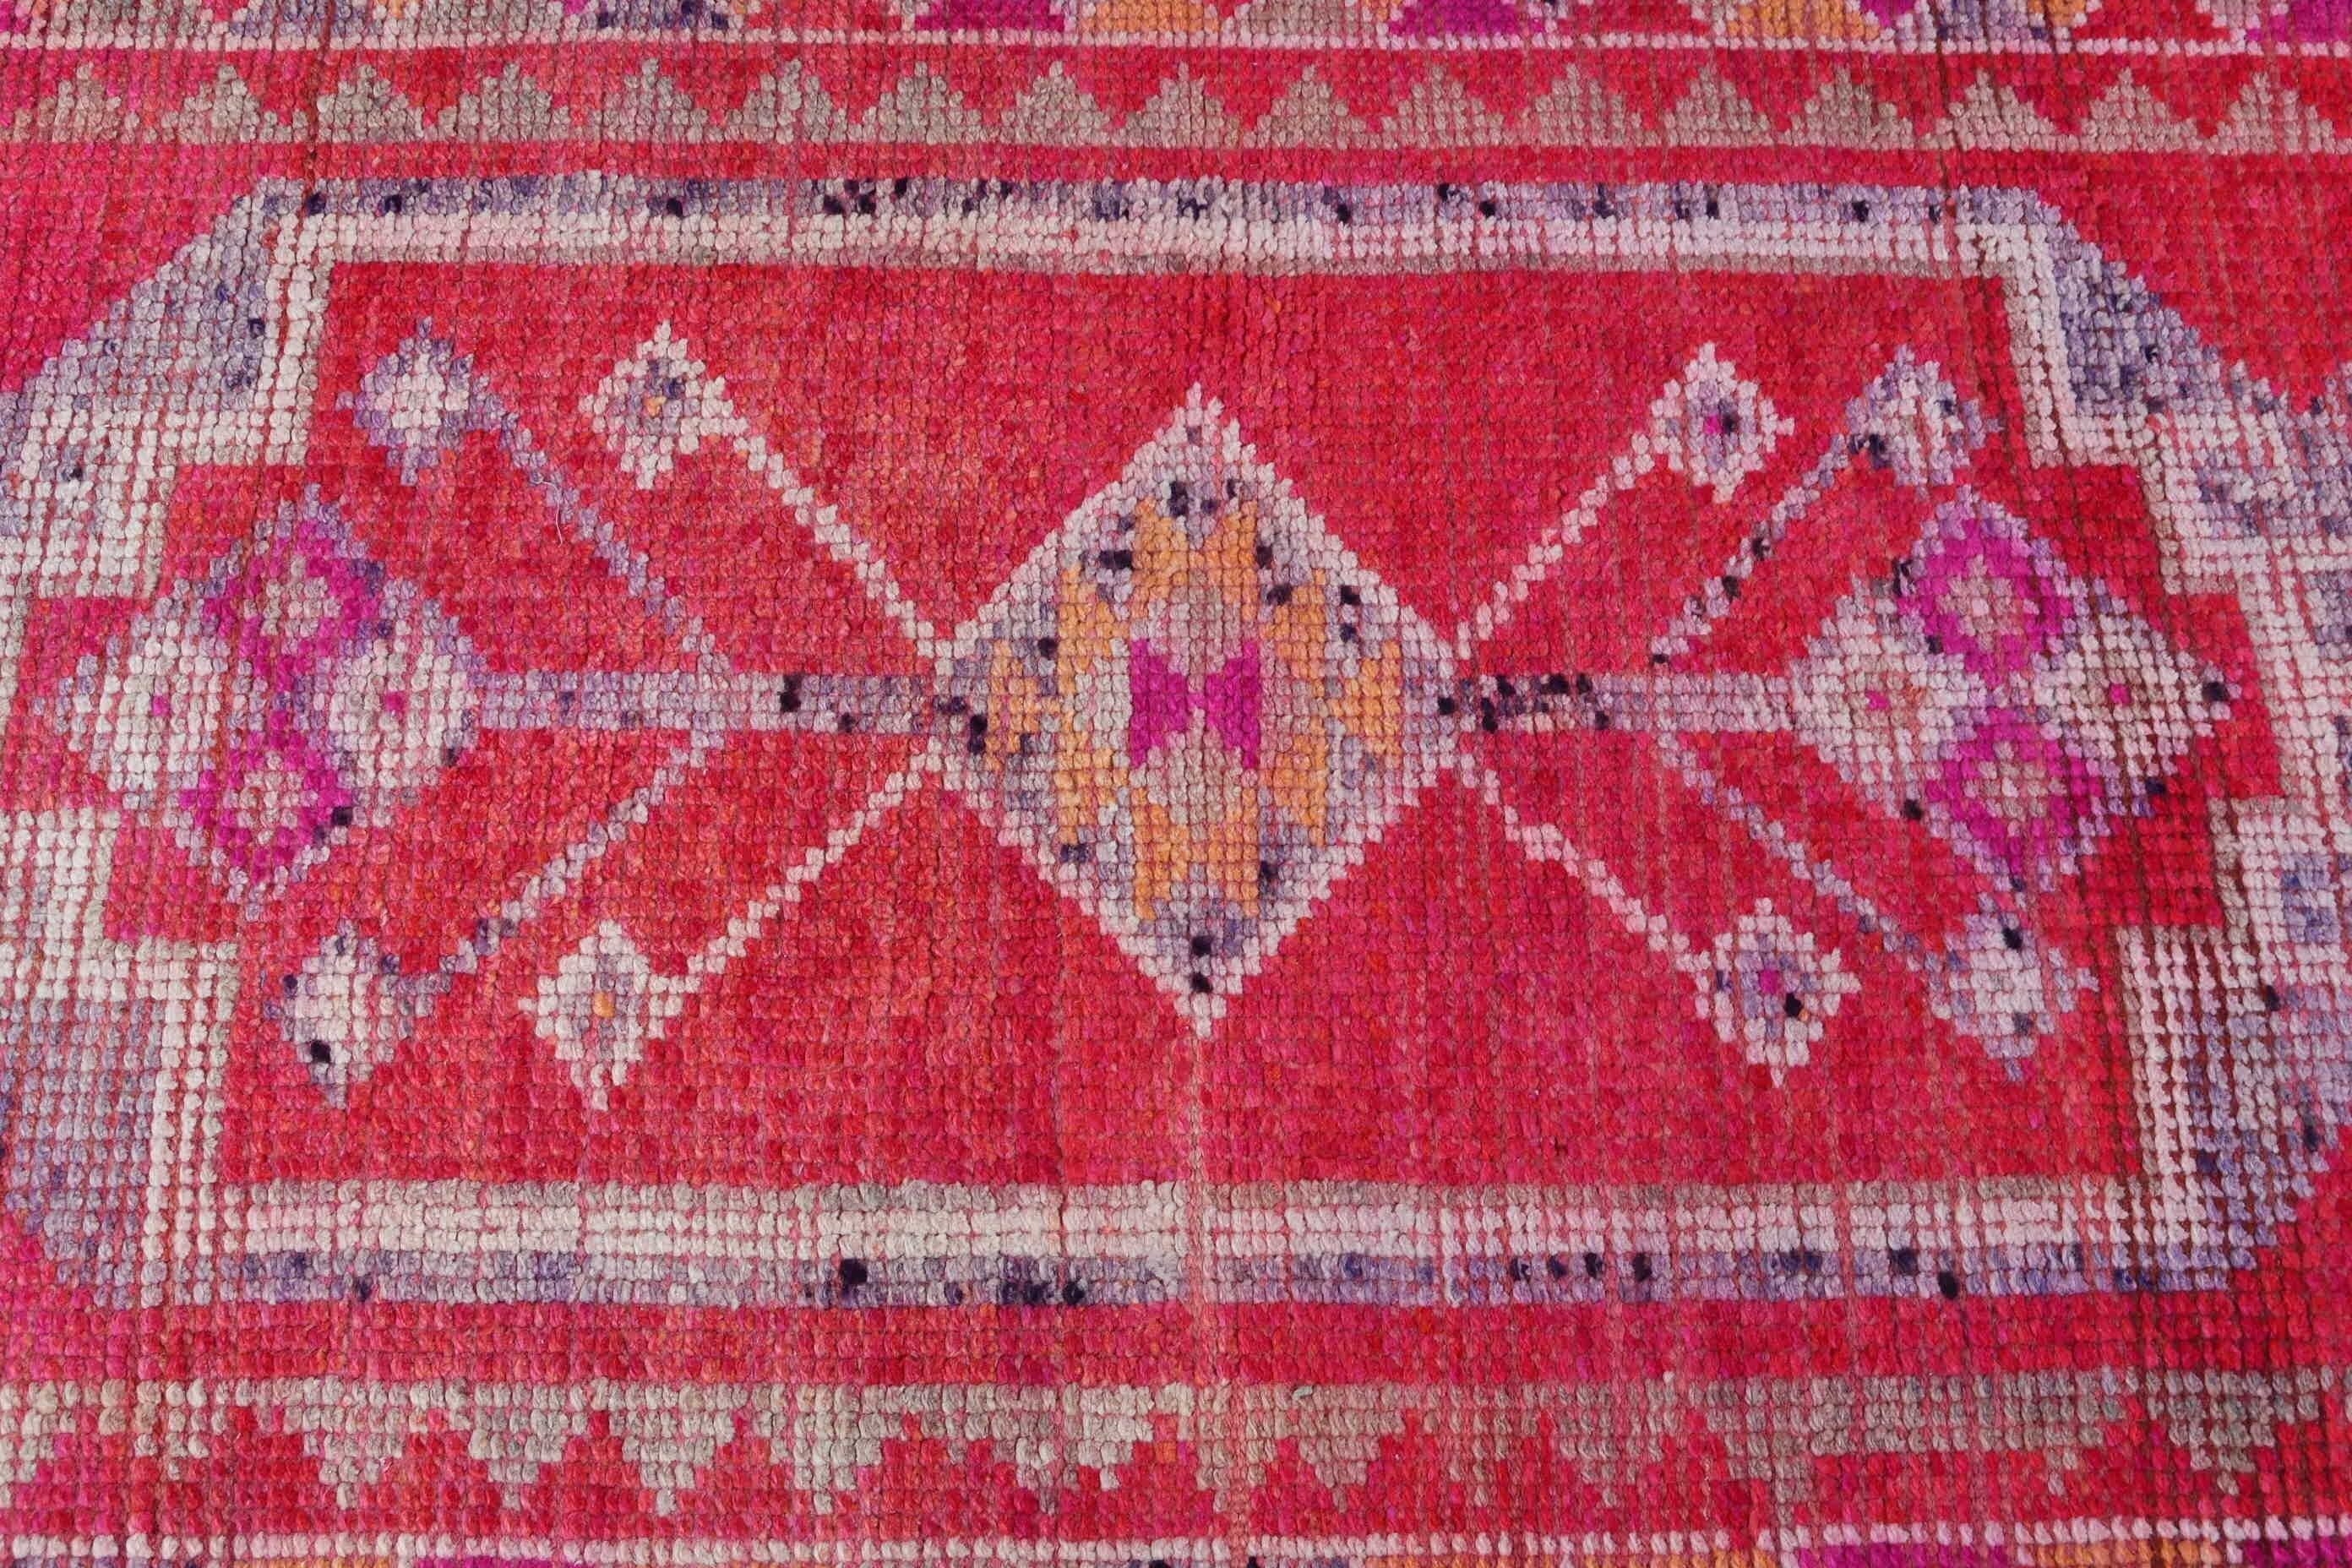 Corridor Rug, Hallway Rugs, Turkish Rugs, Vintage Rug, Pastel Rug, Home Decor Rugs, 2.7x12.2 ft Runner Rug, Pink Oriental Rugs, Bedroom Rug